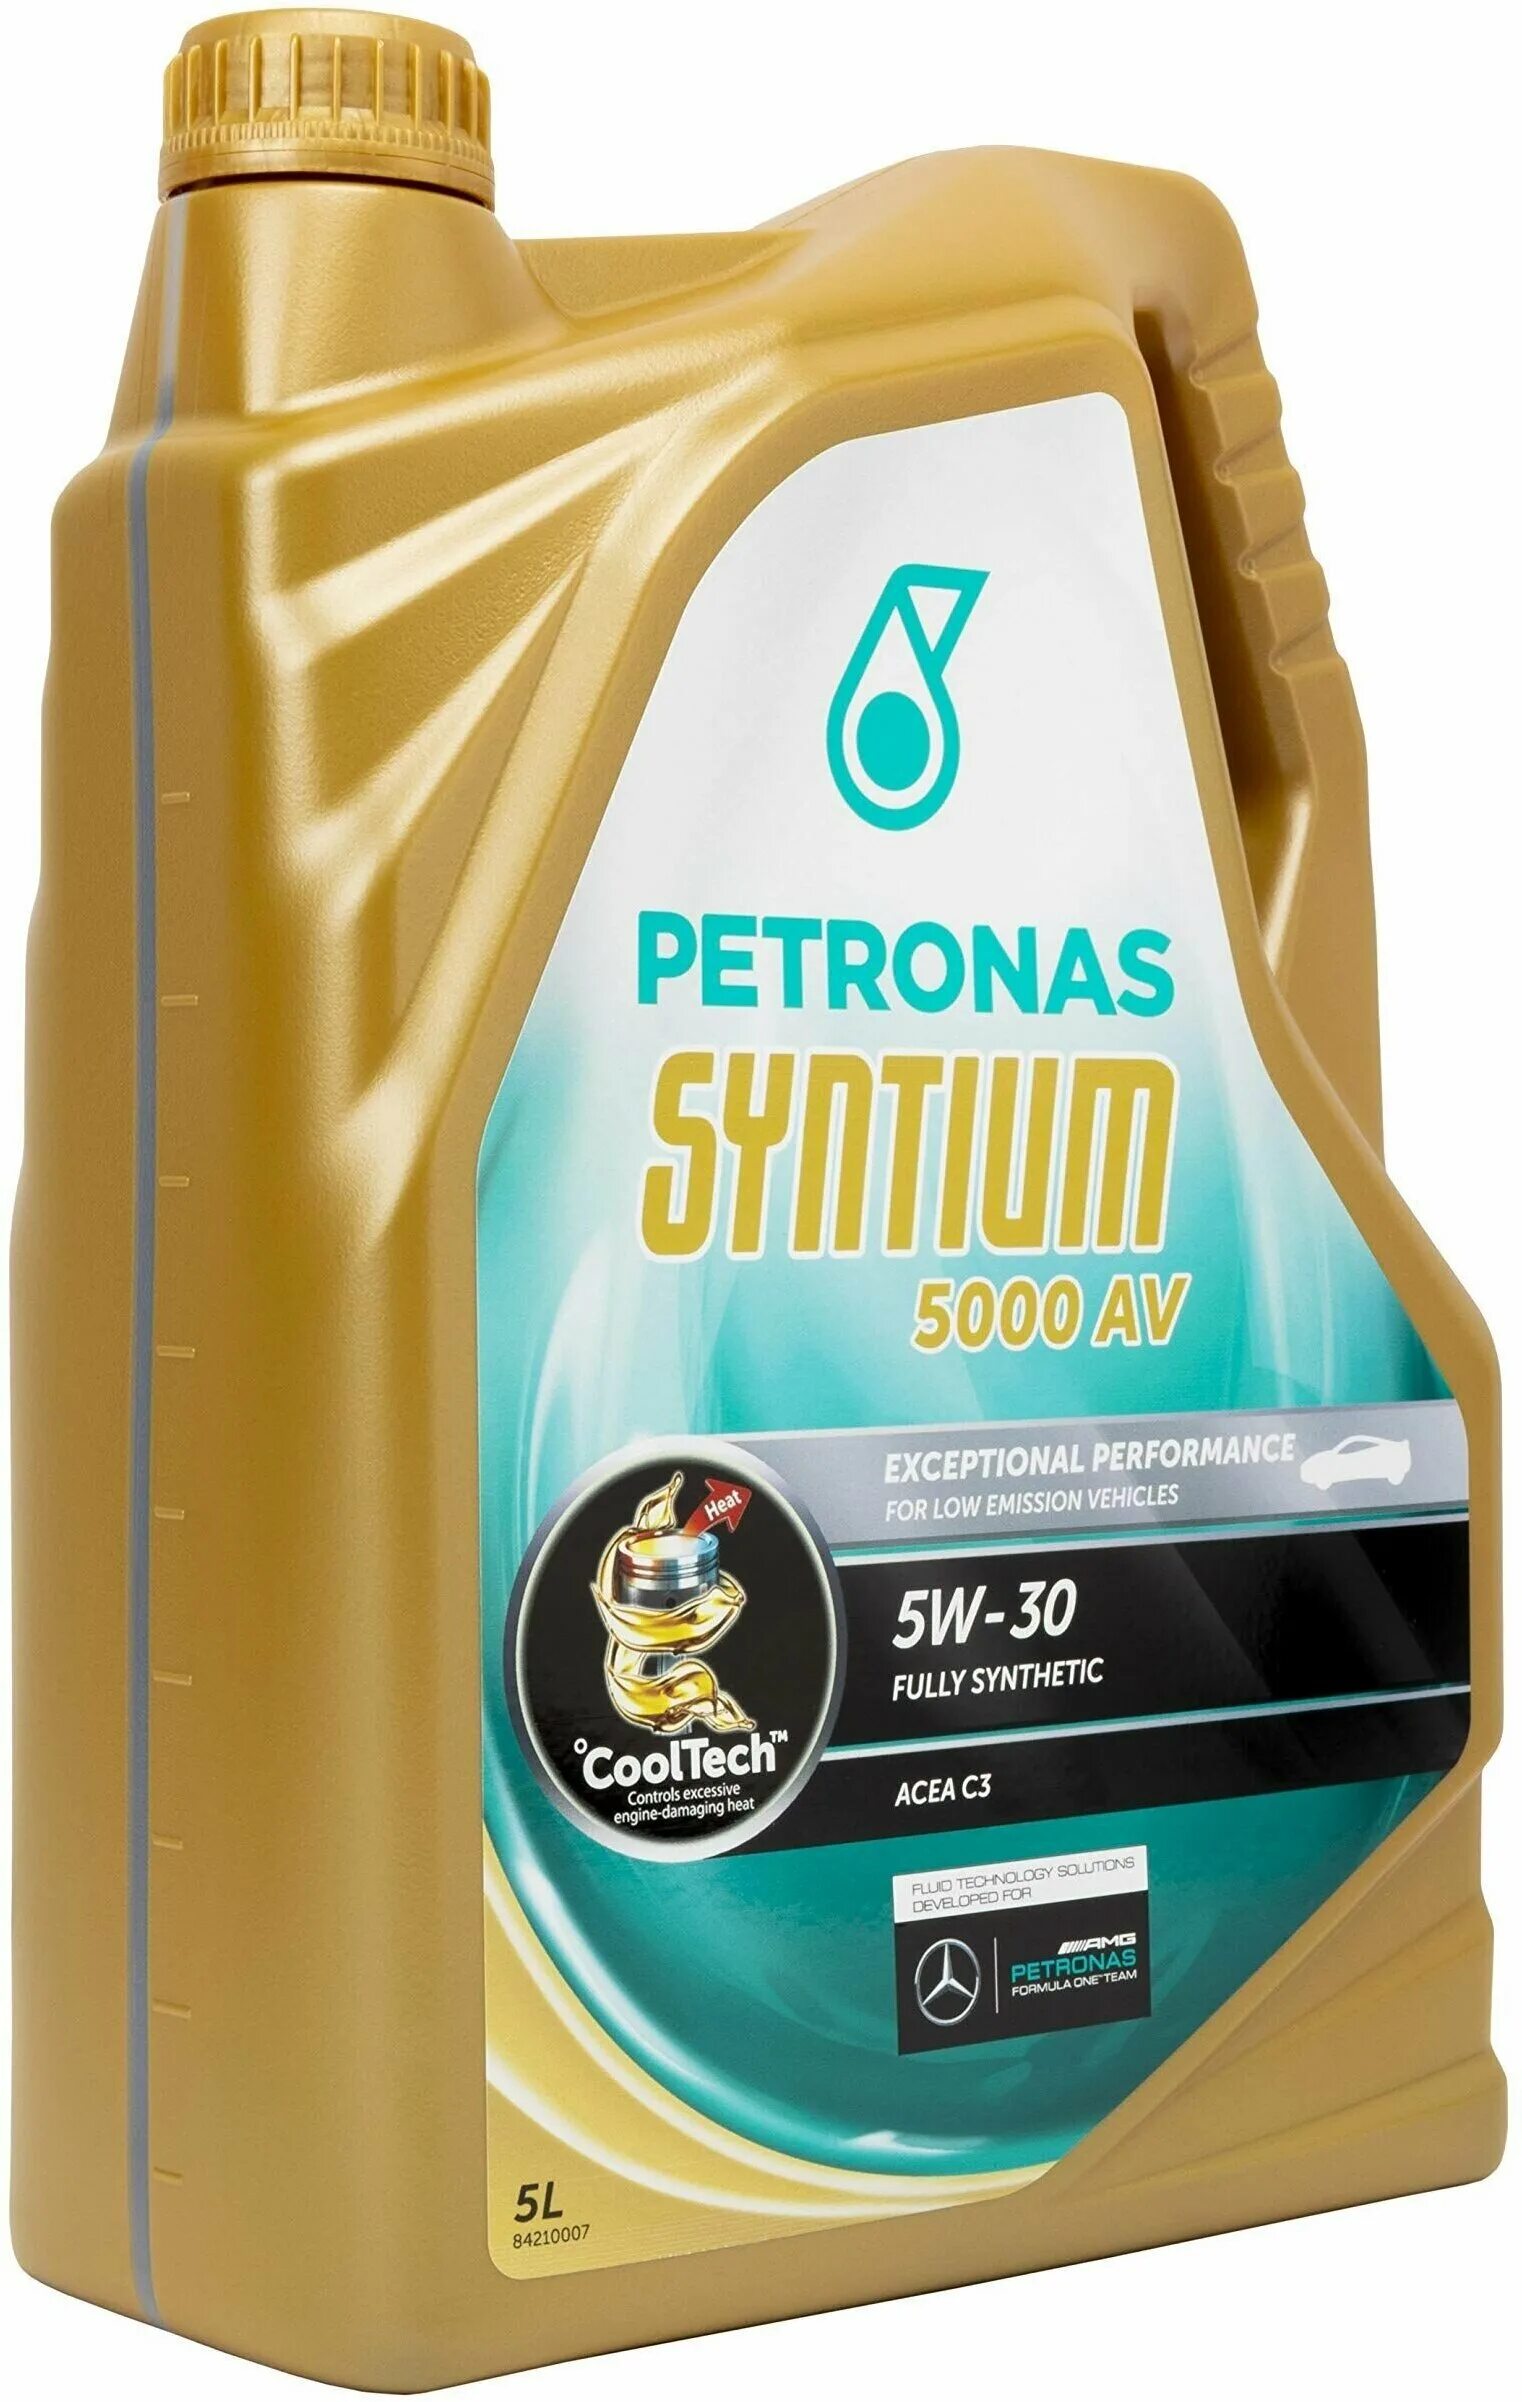 Petronas Syntium 3000 av 5w40. Petronas Syntium 3000 5w-40. Syntium 5000 av 5w30. Petronas Syntium 5/40.